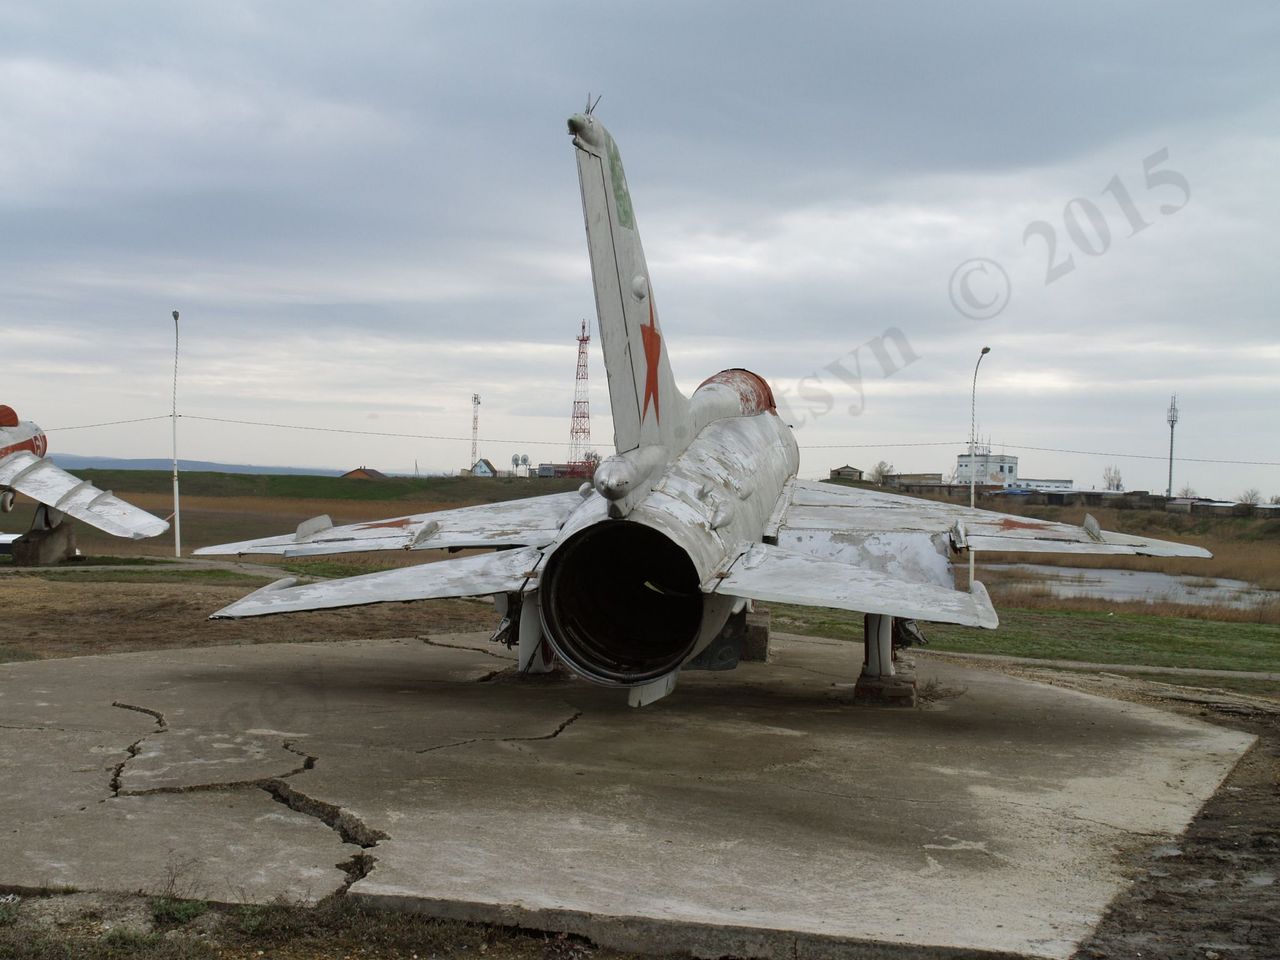 MiG-21_16.jpg